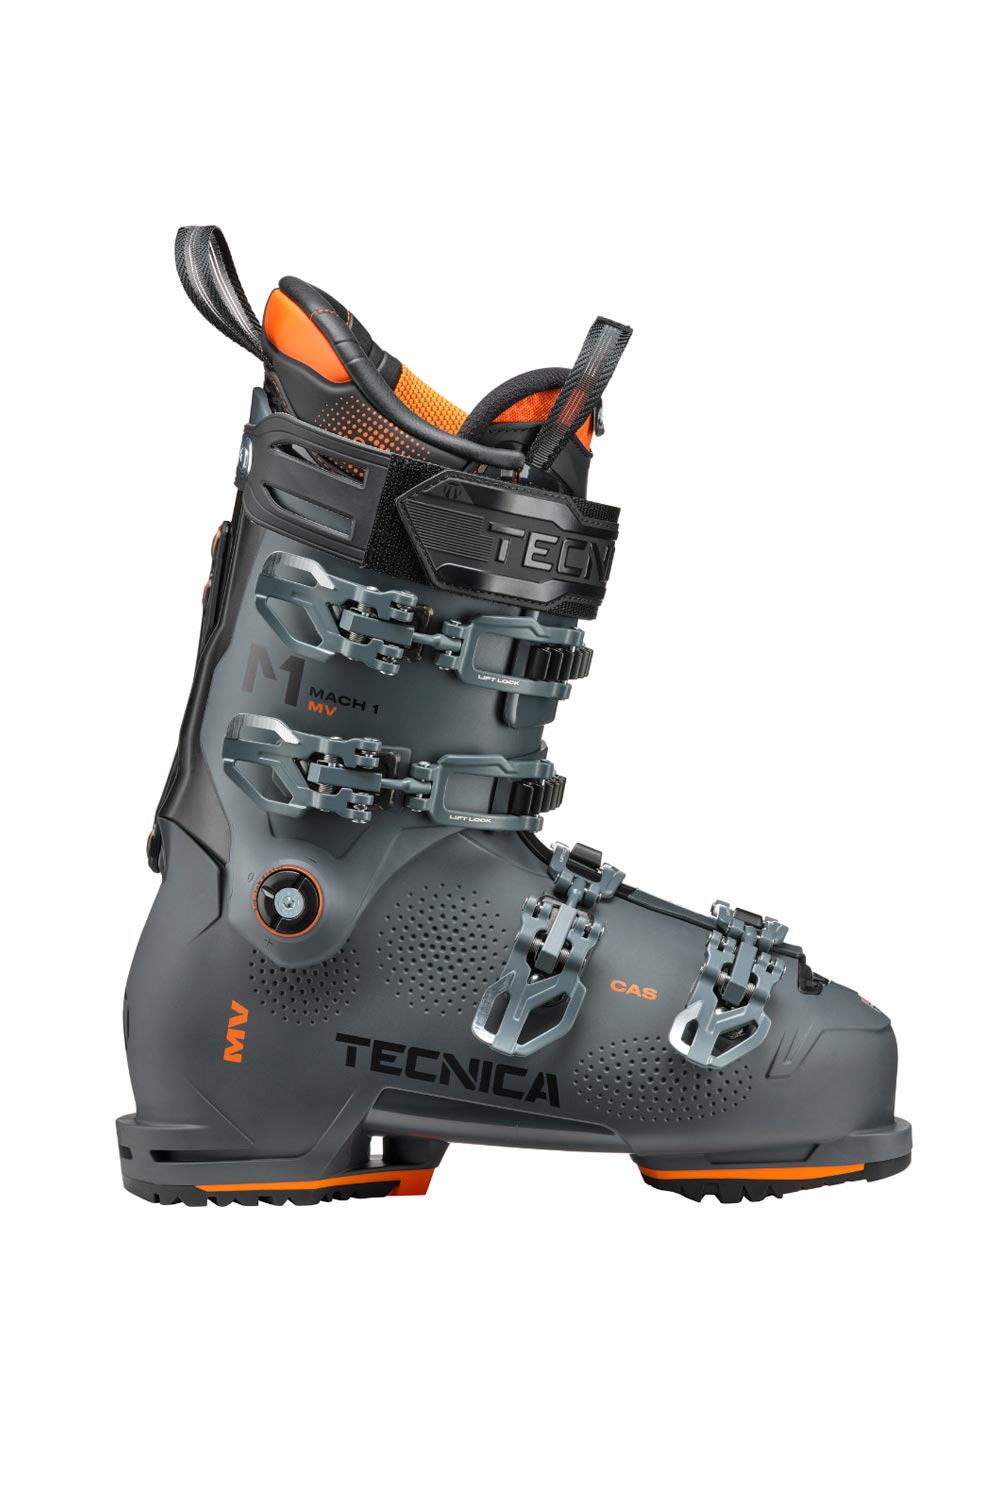 Tecnica Mach1 MV 110 Ski Boots - Men's